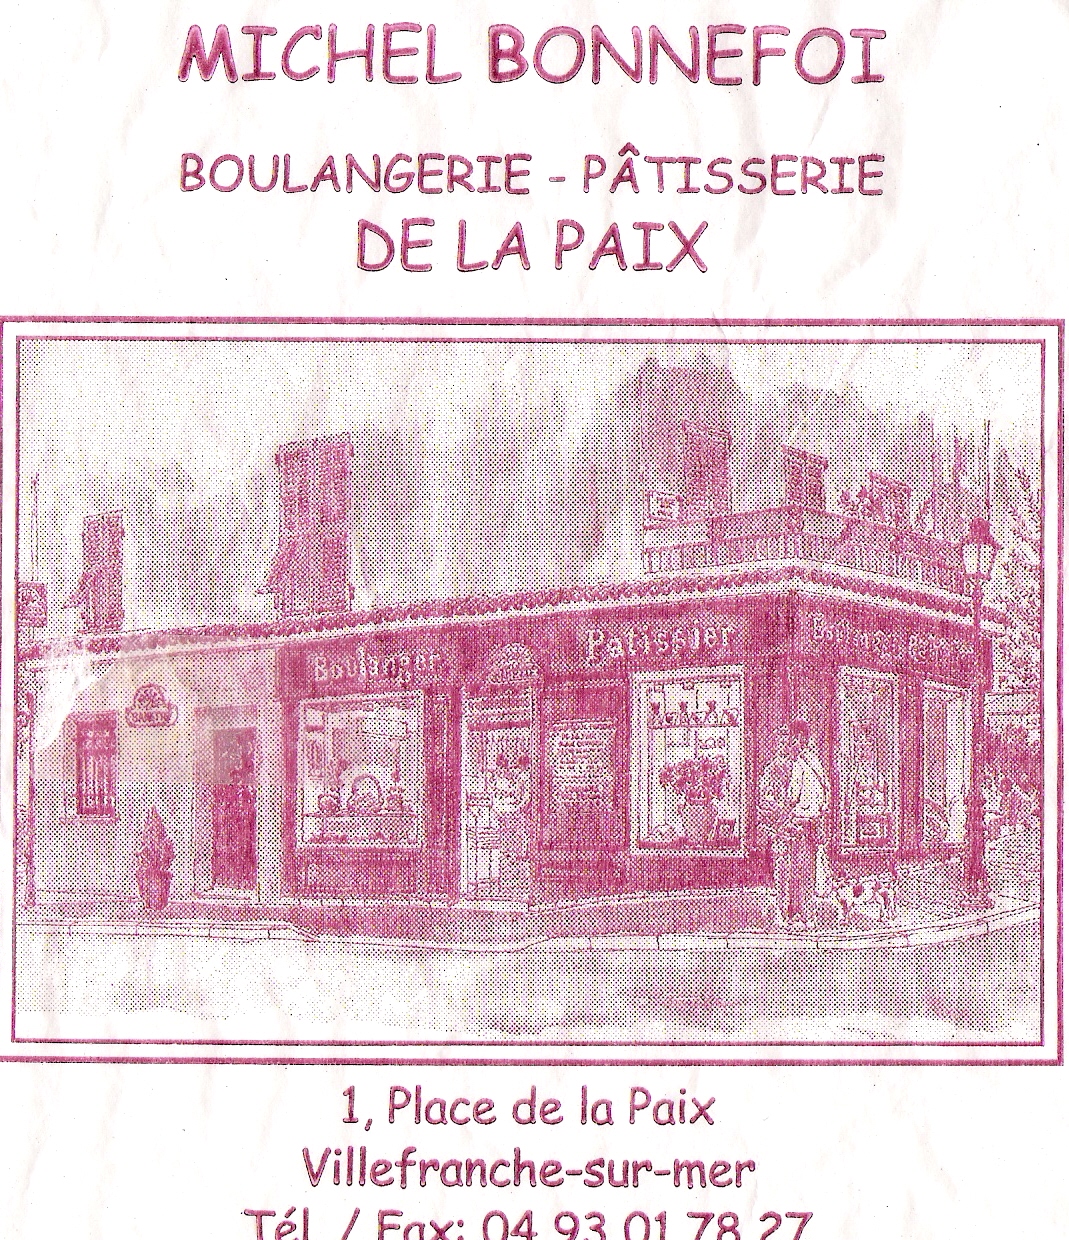 Boulangerie de la Paix, Villefranche